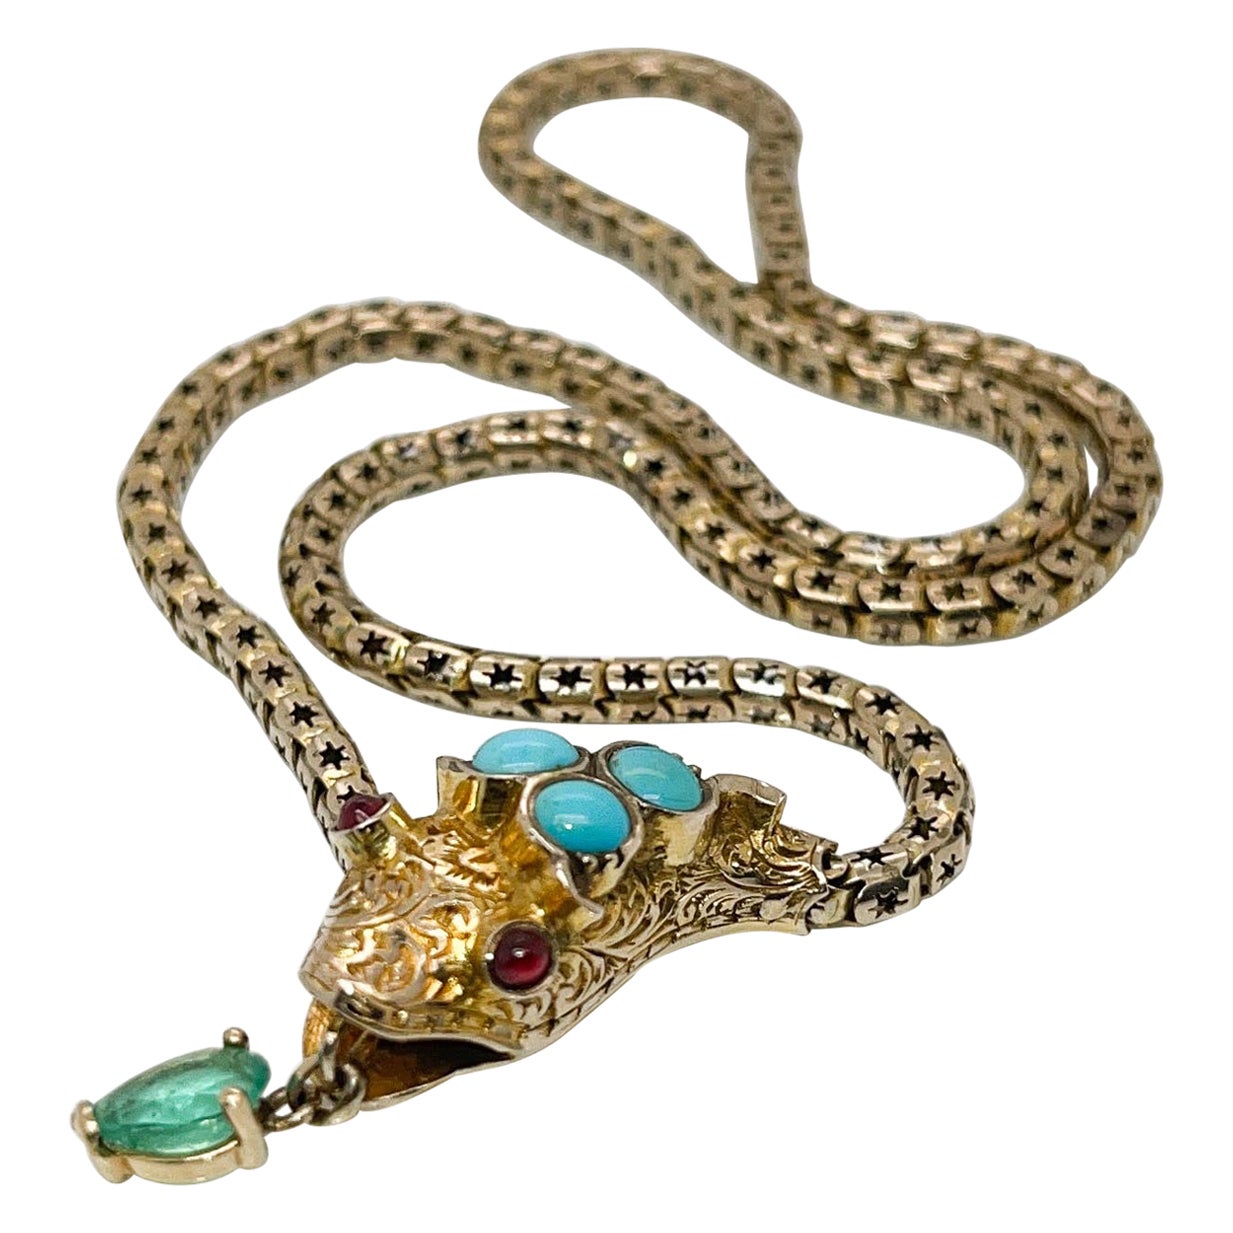 Collier ras du cou victorien ancien en or et pierres précieuses avec serpent figuratif